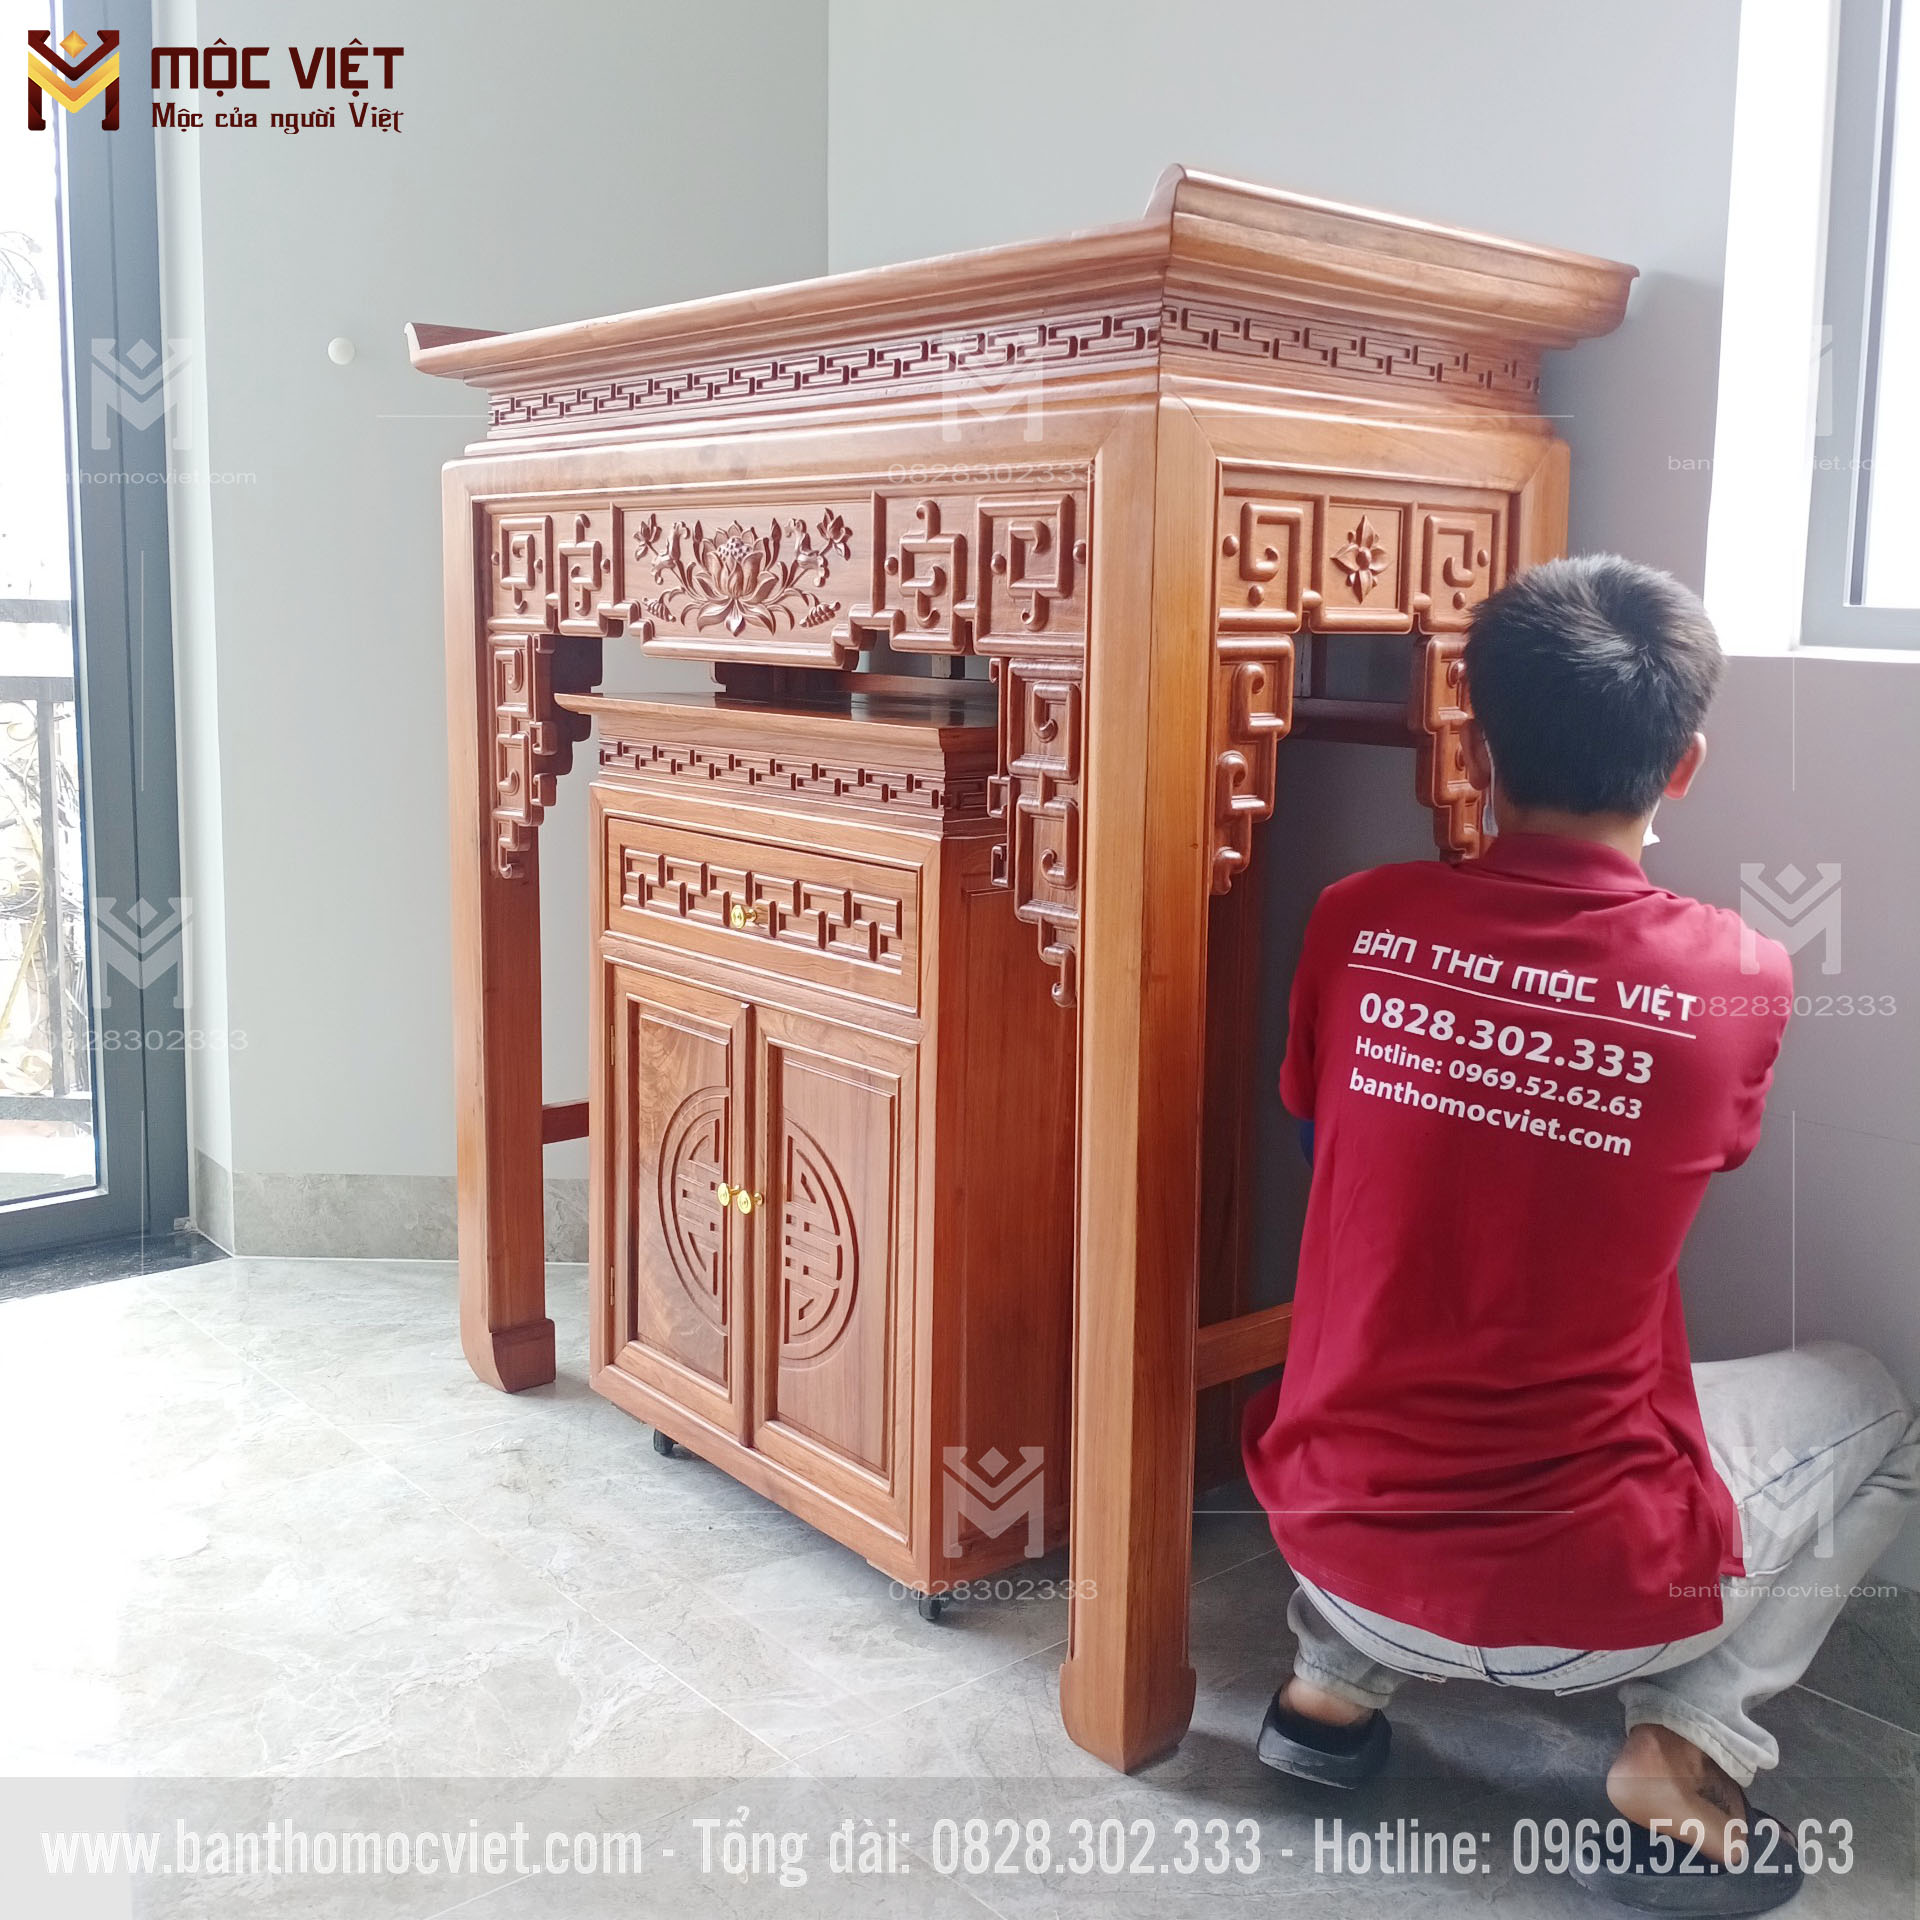 Bàn thờ gỗ Hương Mộc Việt luôn là được khách hàng tin tưởng và lựa chọn